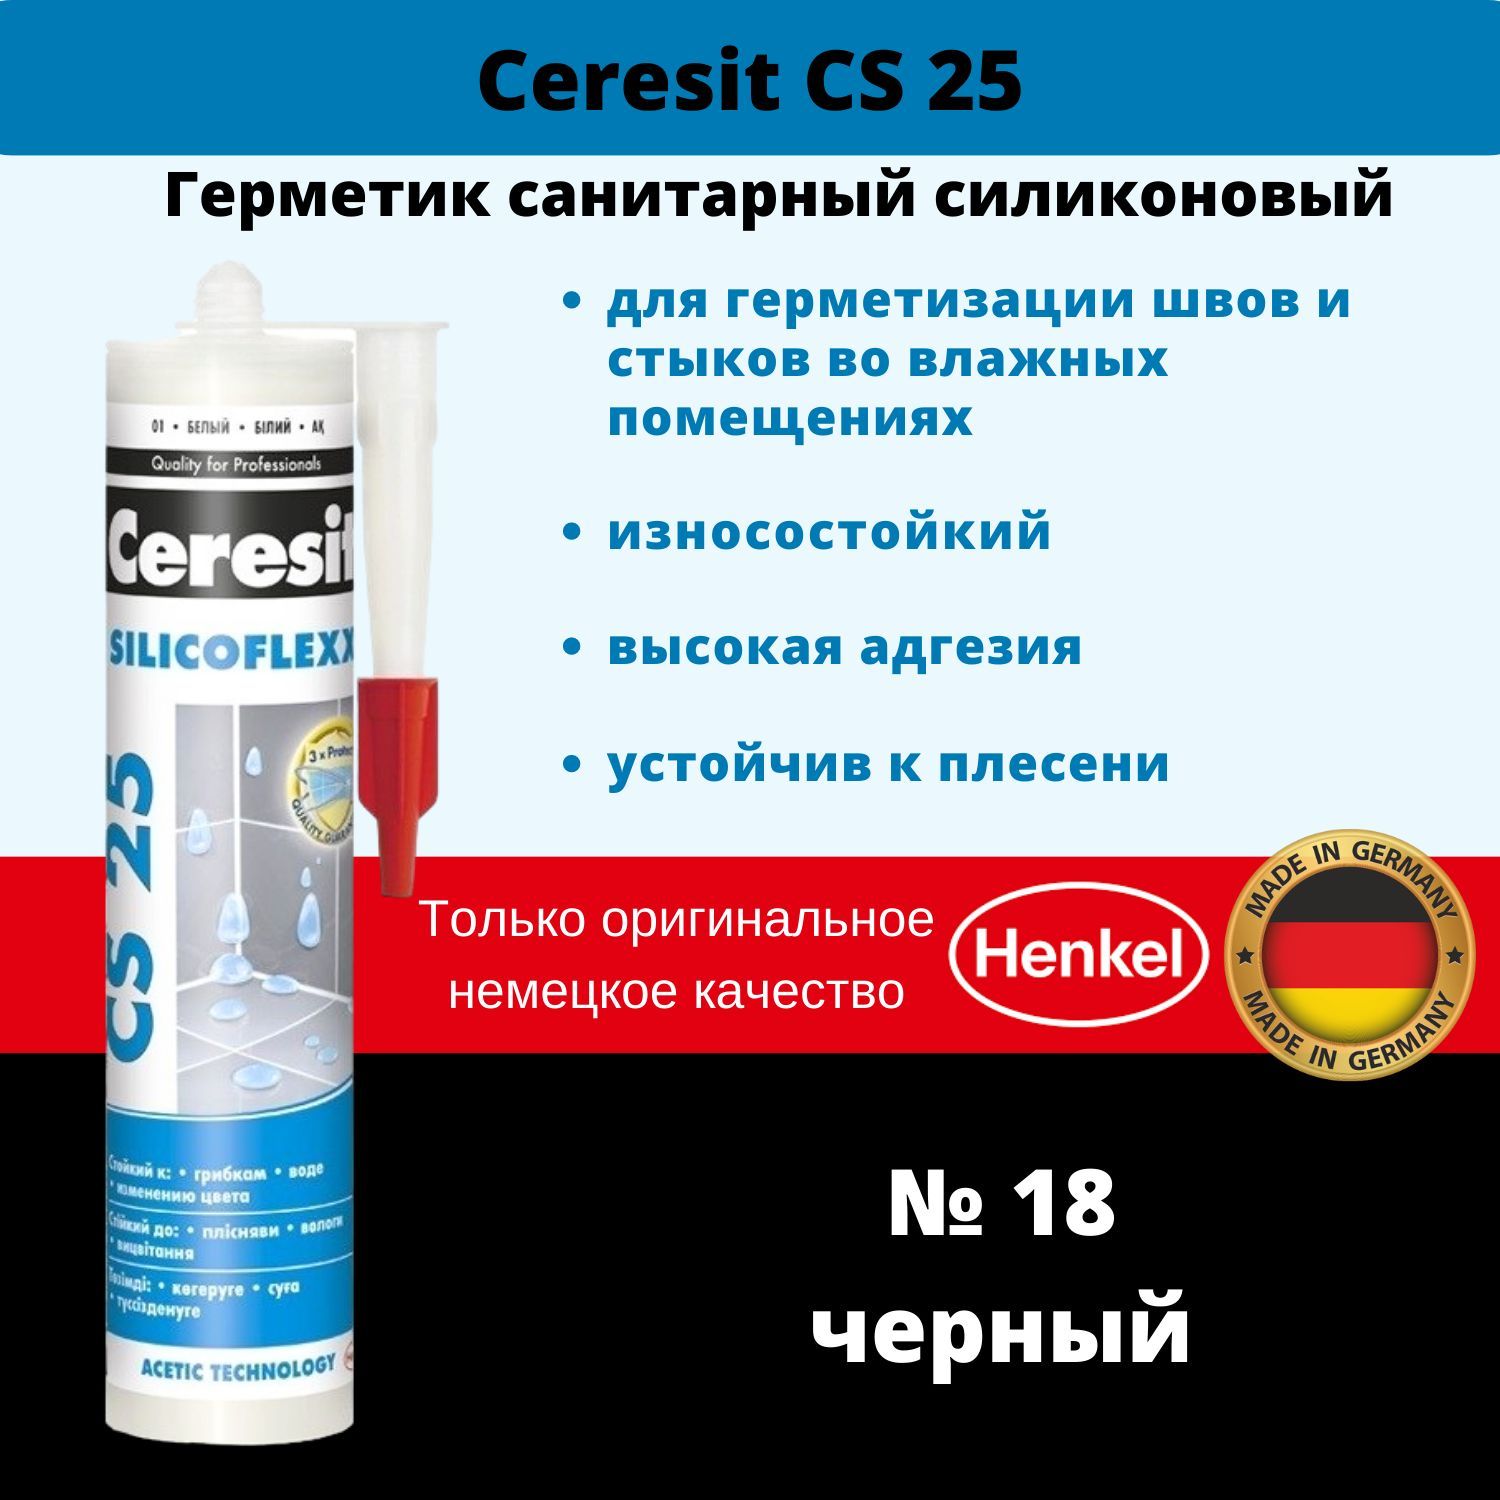 Санитарный герметик Ceresit CS 25 санитарный герметик Ceresit CS 25. Герметик Ceresit cs29. Герметик Церезит черный.